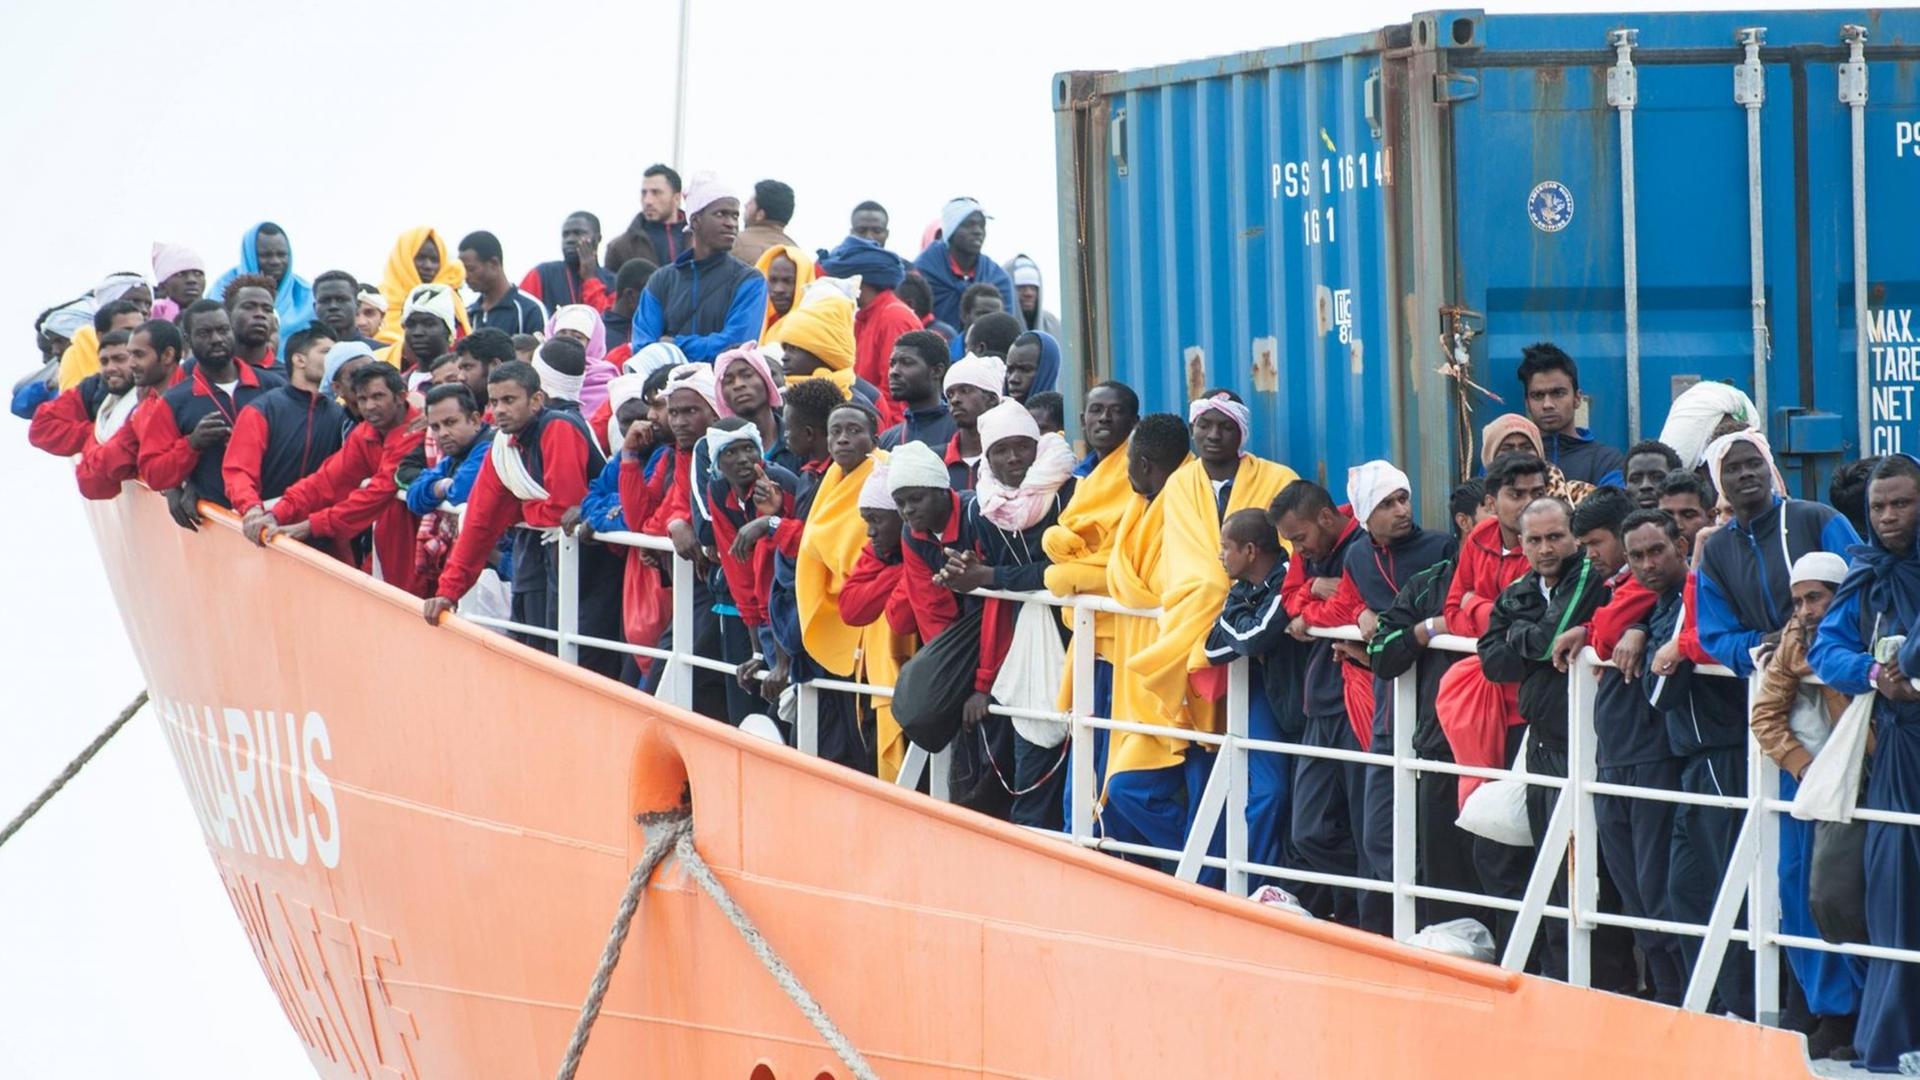 Flüchtlinge stehen an der Reeling des Schiffs Aquarius der Organisation SOS Mediterranee